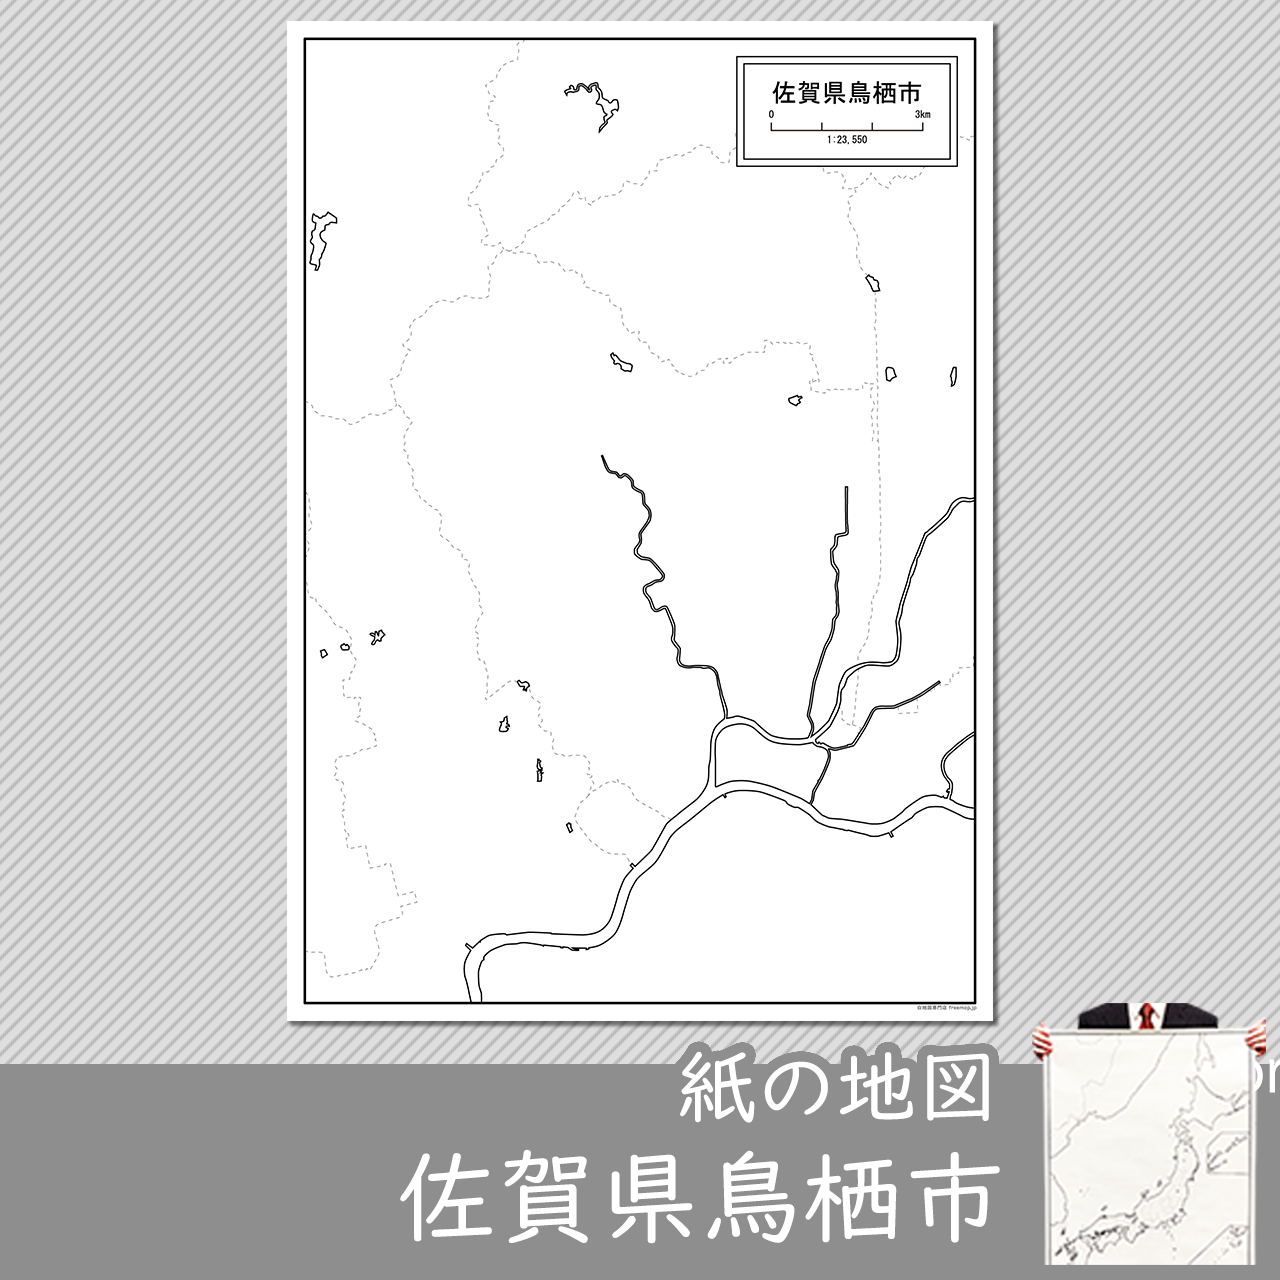 鳥栖市の紙の白地図のサムネイル